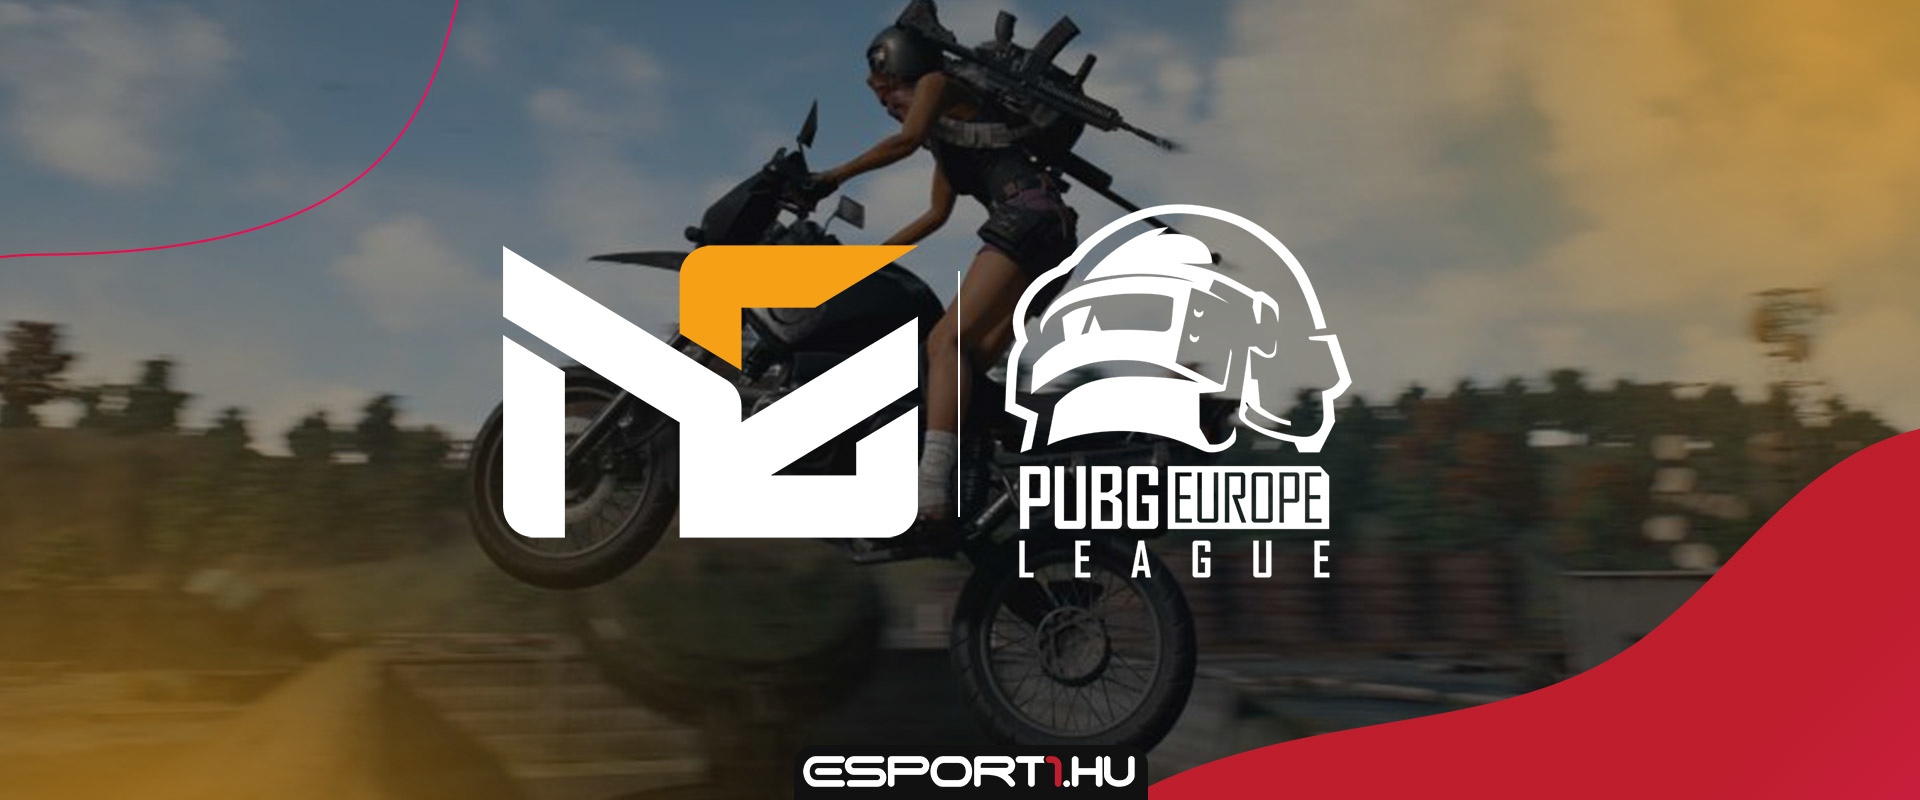 Egy karnyújtásnyira a Nice Gaming a PUBG e-sport európai másodligájától